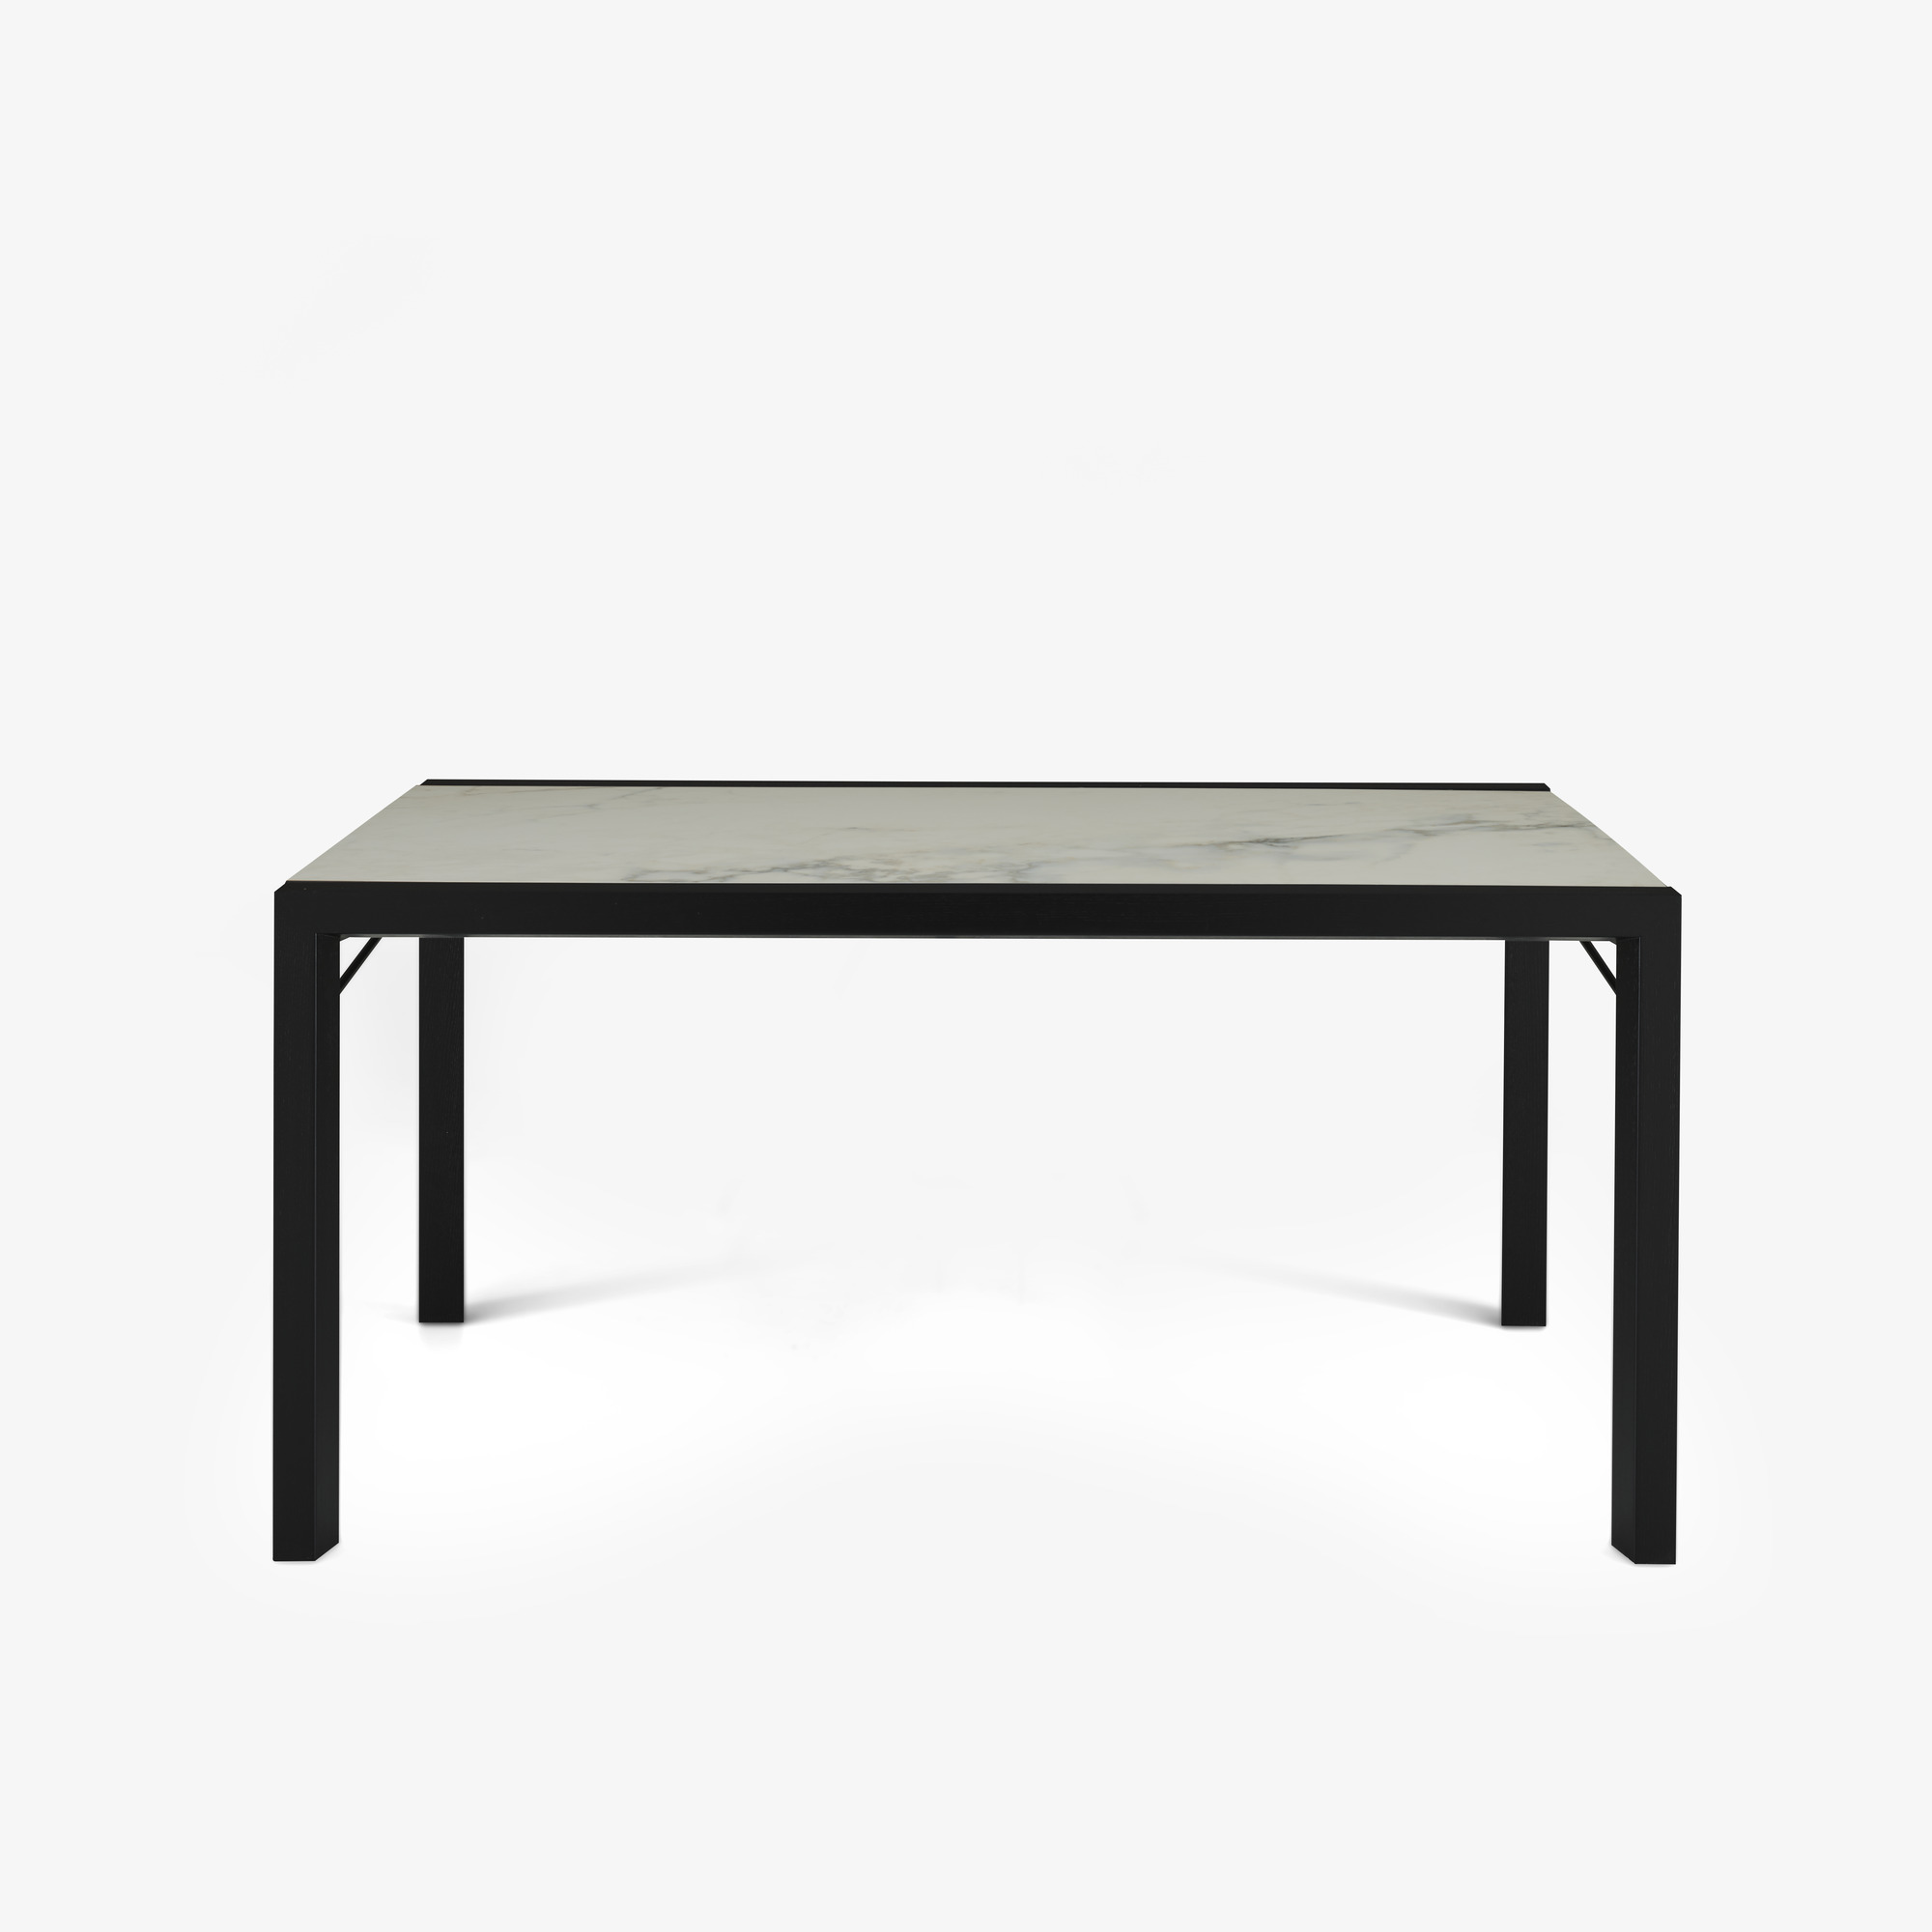 Image 餐桌 桌面由白色大理石效果的太空瓷制成 黑色白蜡木底座